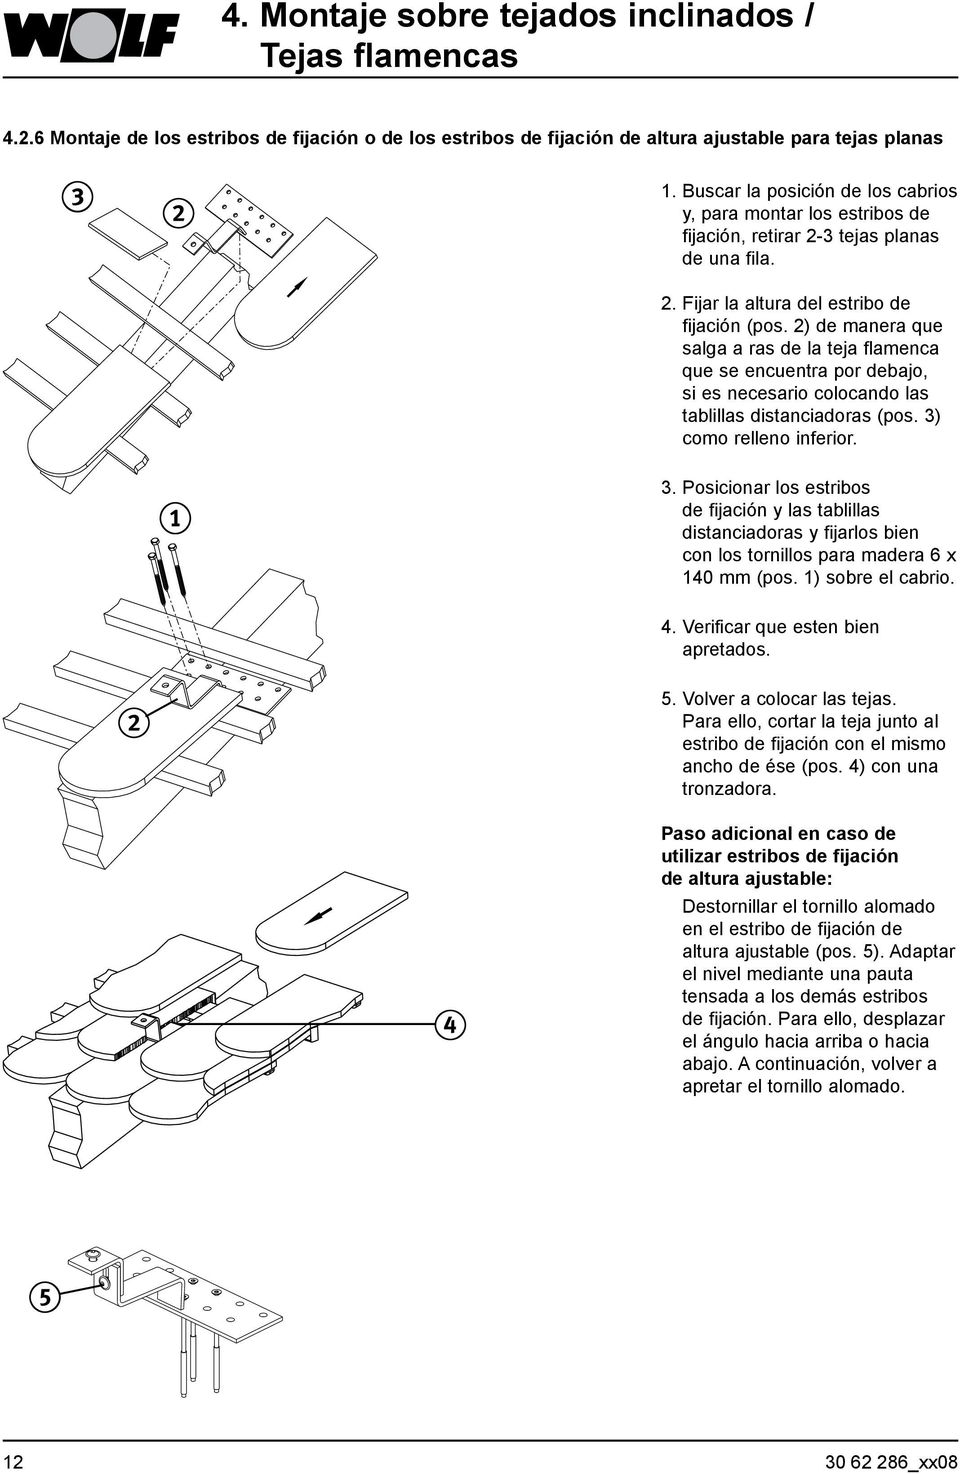 2) de manera que salga a ras de la teja flamenca que se encuentra por debajo, si es necesario colocando las tablillas distanciadoras (pos. 3)